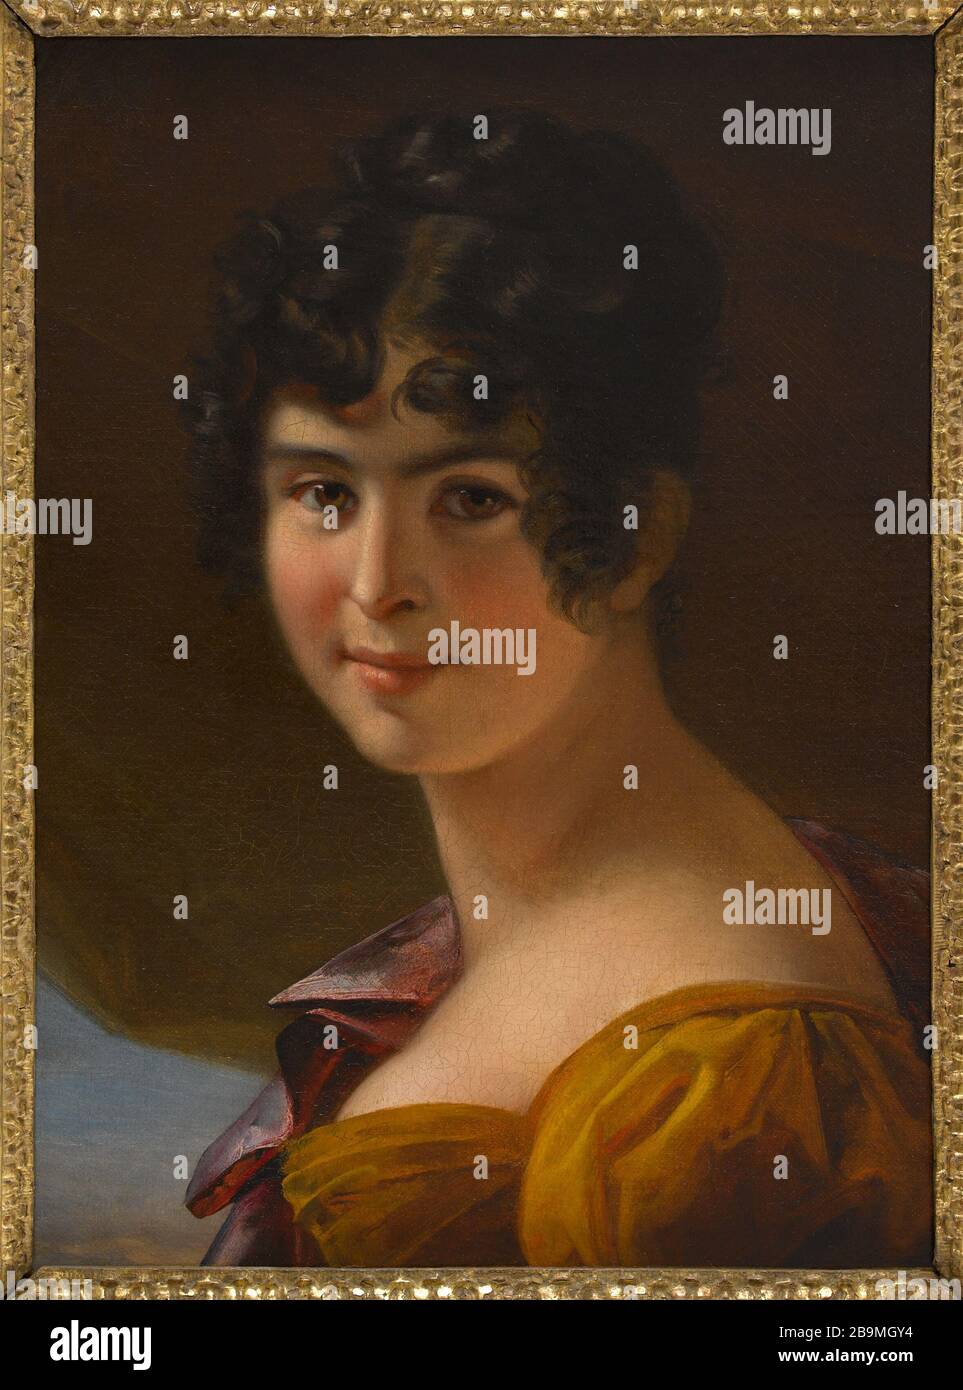 ADELE FOUCHER Julie Duvidal de Montferrier (1797-1869). 'Adèle Foucher'. Huile sur toile, vers 1820. Paris, Maison de Victor Hugo. Stock Photo